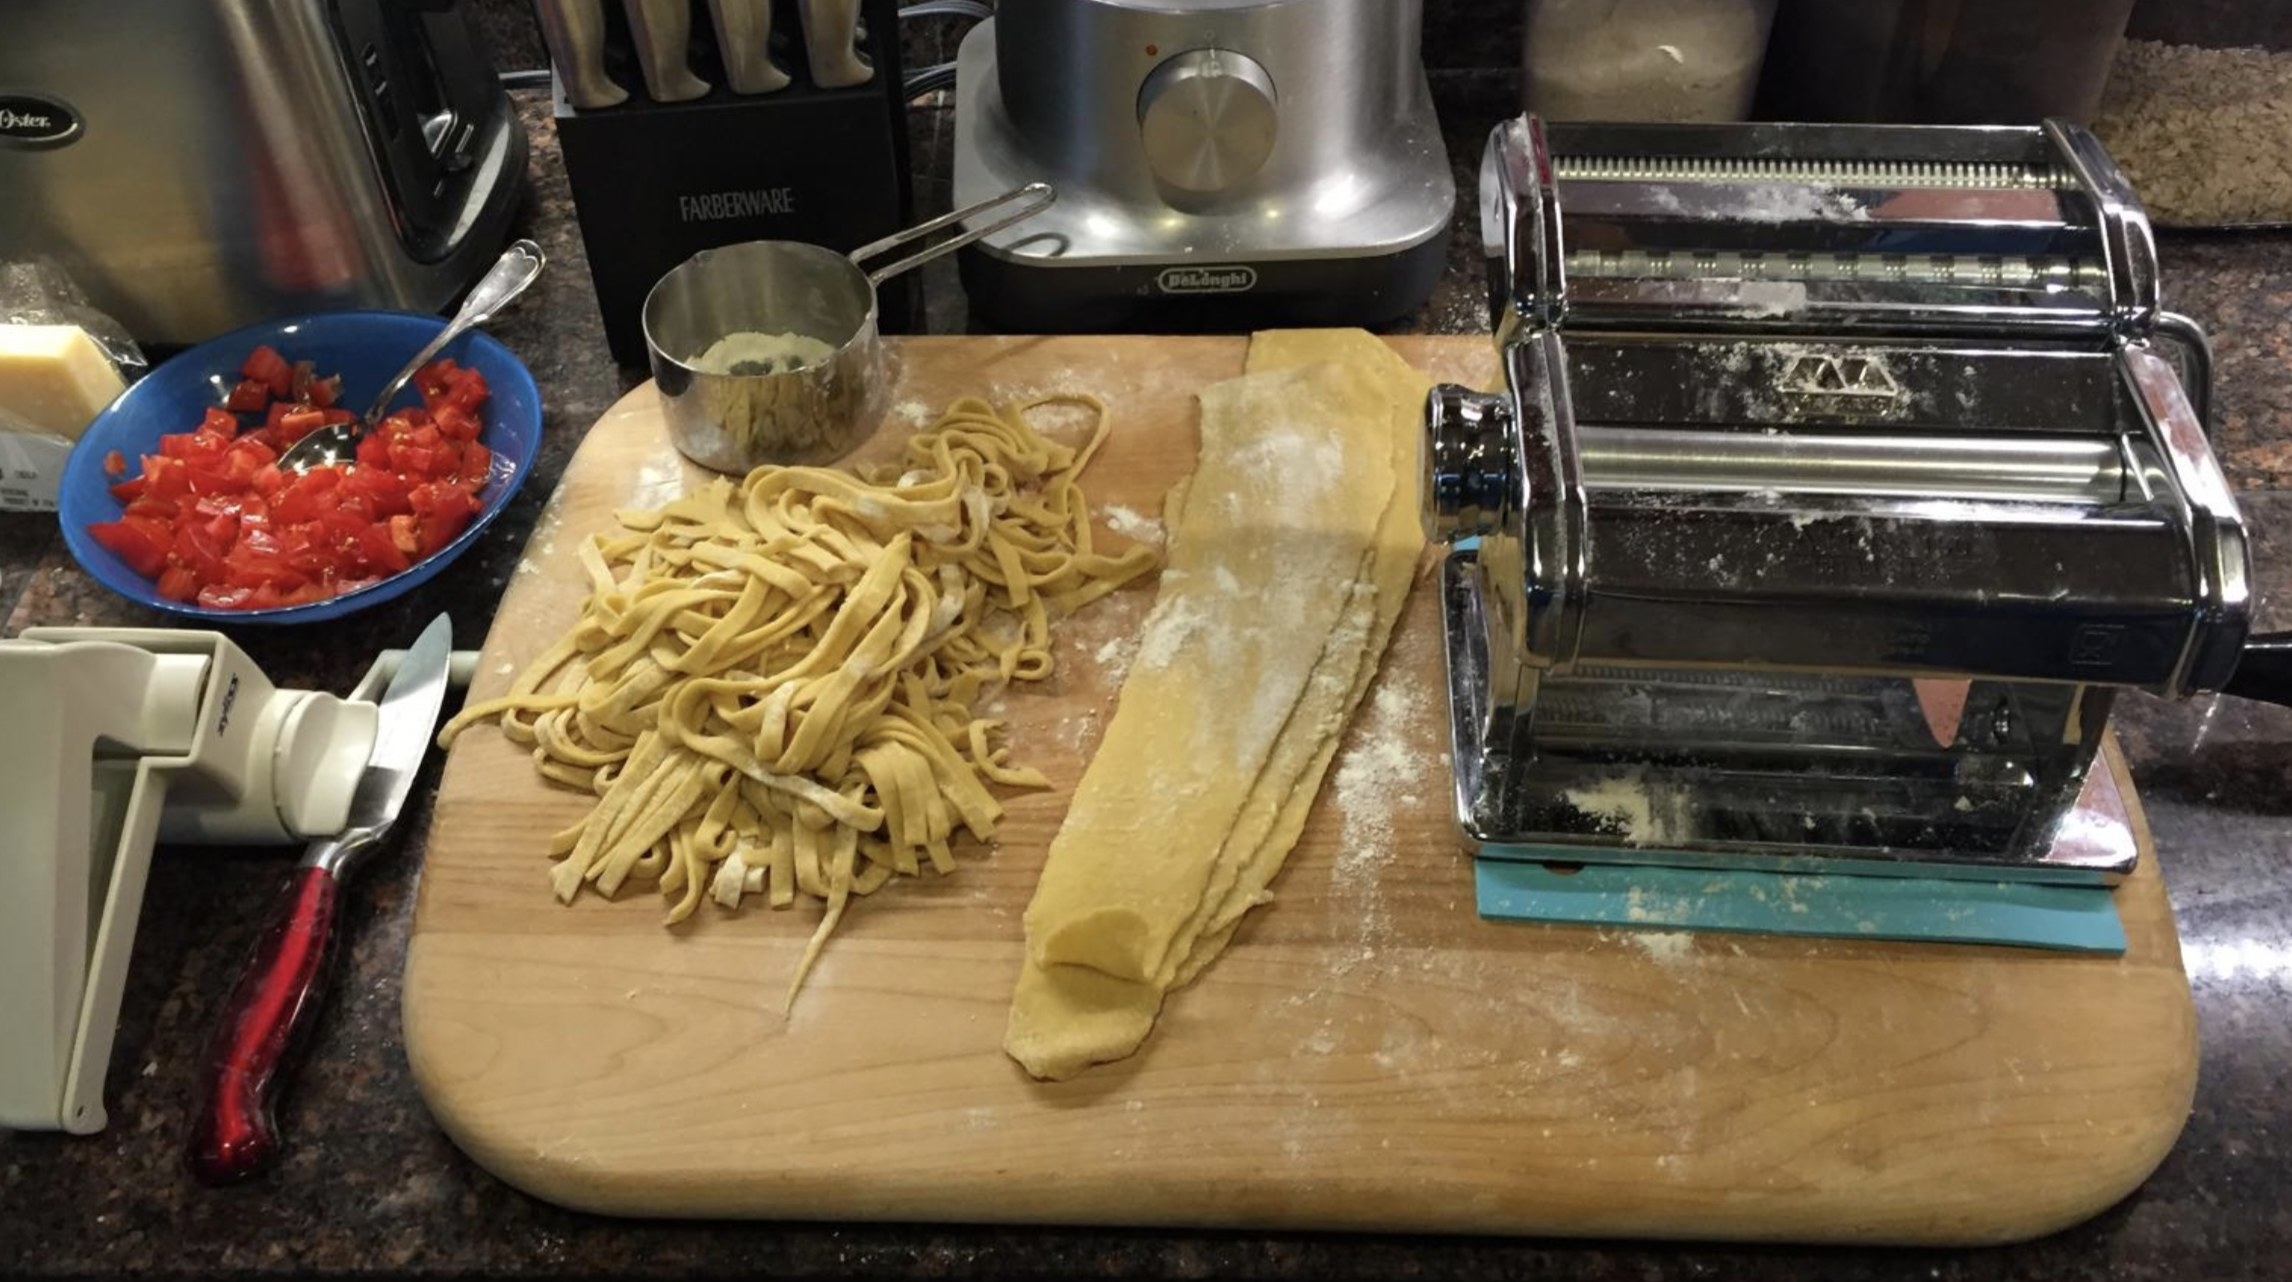 the pasta machine next to fresh made pasta